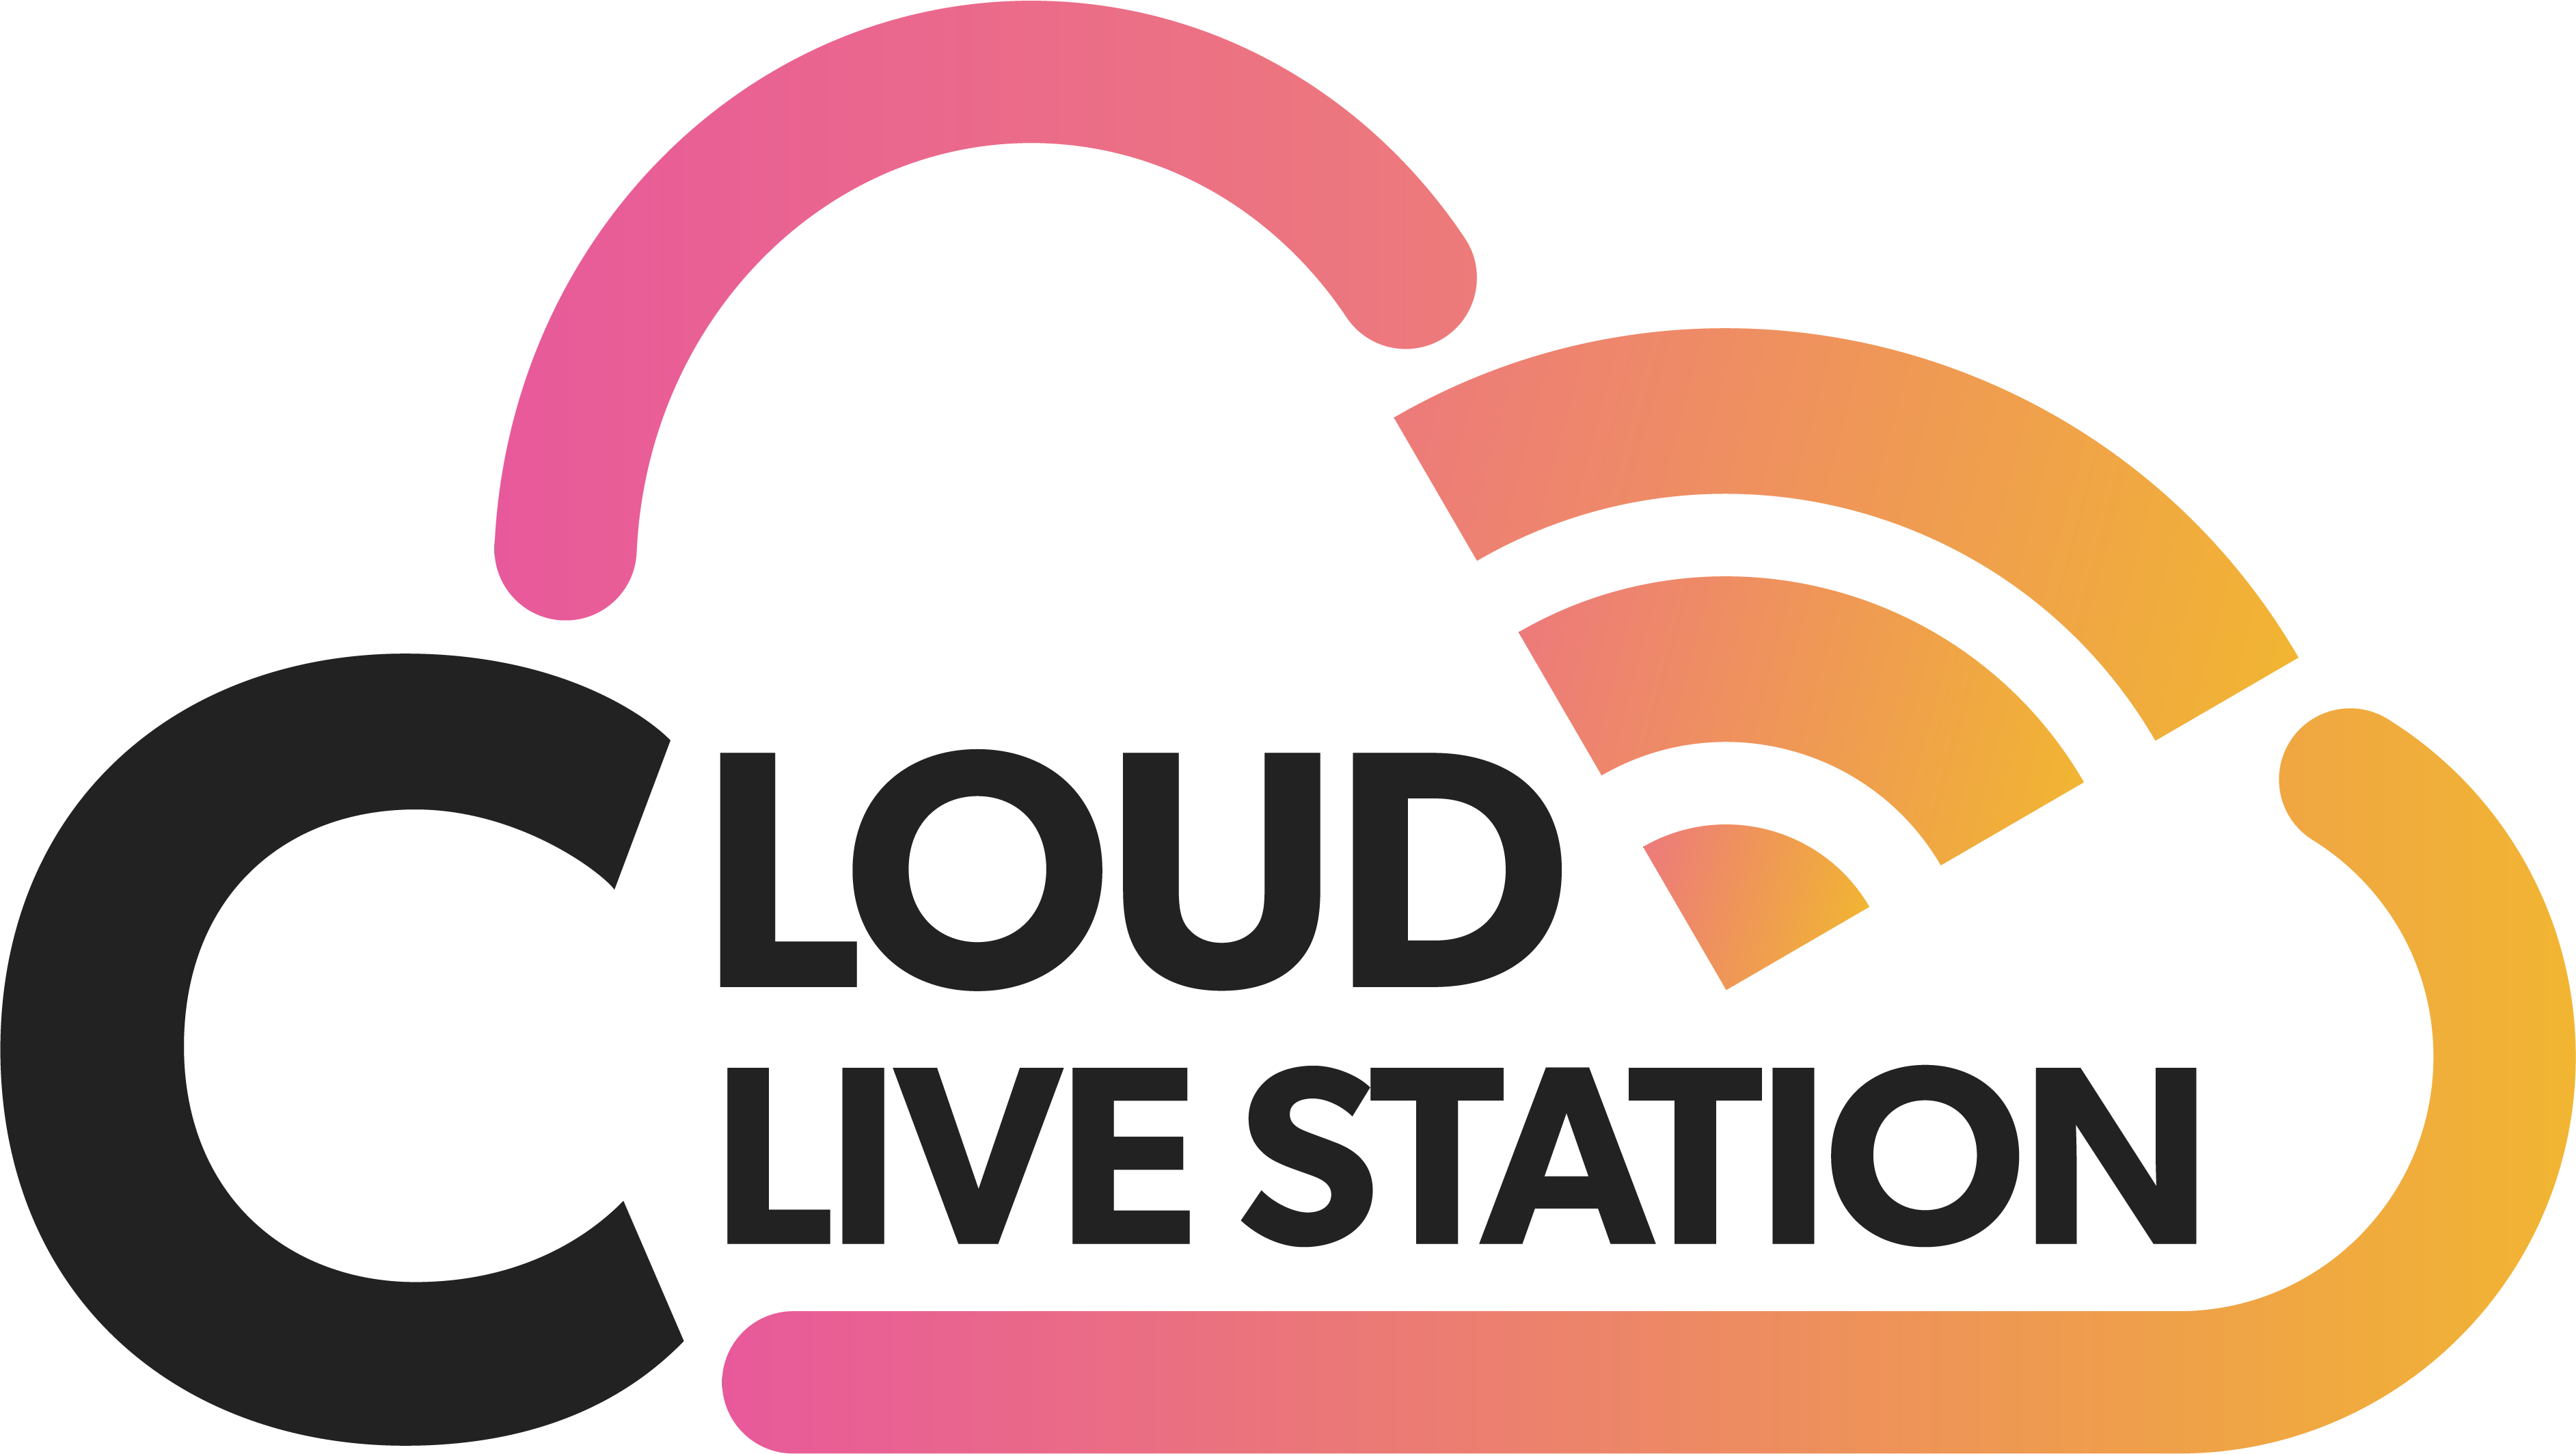 「CLOUD LIVE STATION」ロゴ